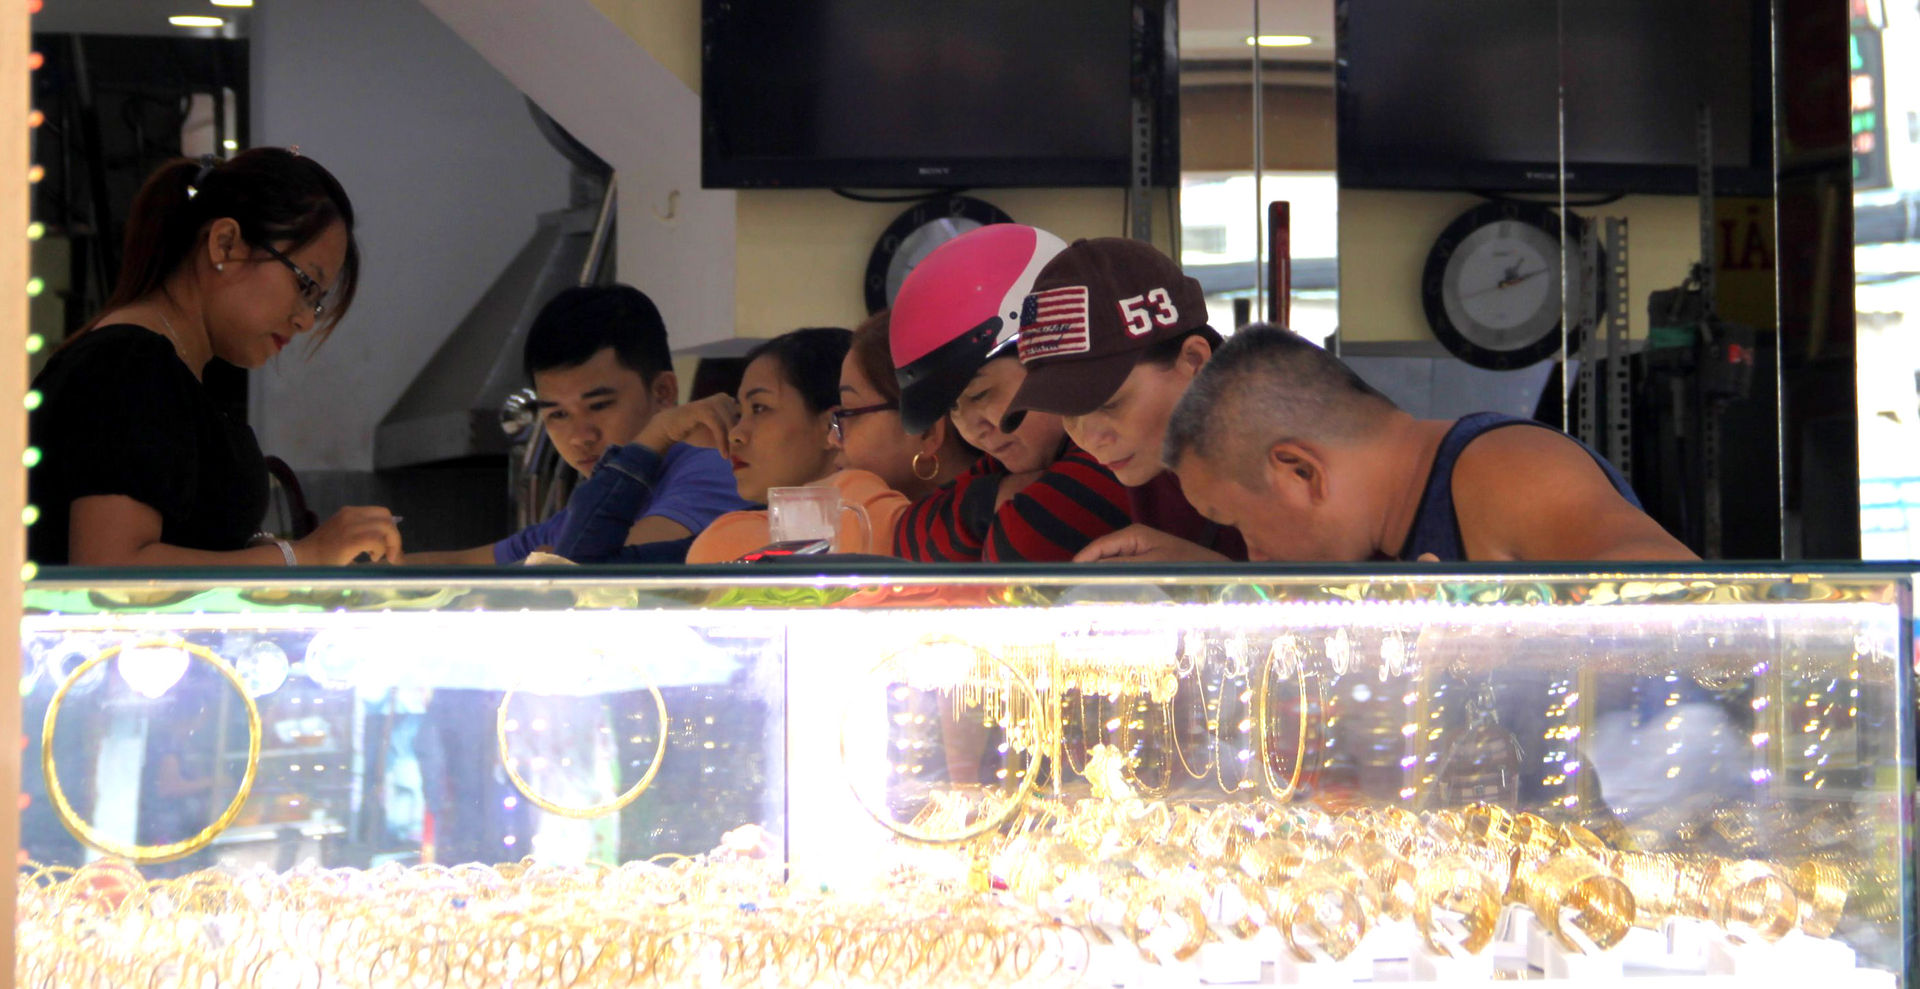   Một cửa hàng kinh doanh vàng khác trên đường Kim Hưng Phát (quận Bình Thạnh) ghi nhận lượng khách ra vào khá đông, chỉ trong vòng 30 phút lượt khách ra vào đây tầm 30 người.   